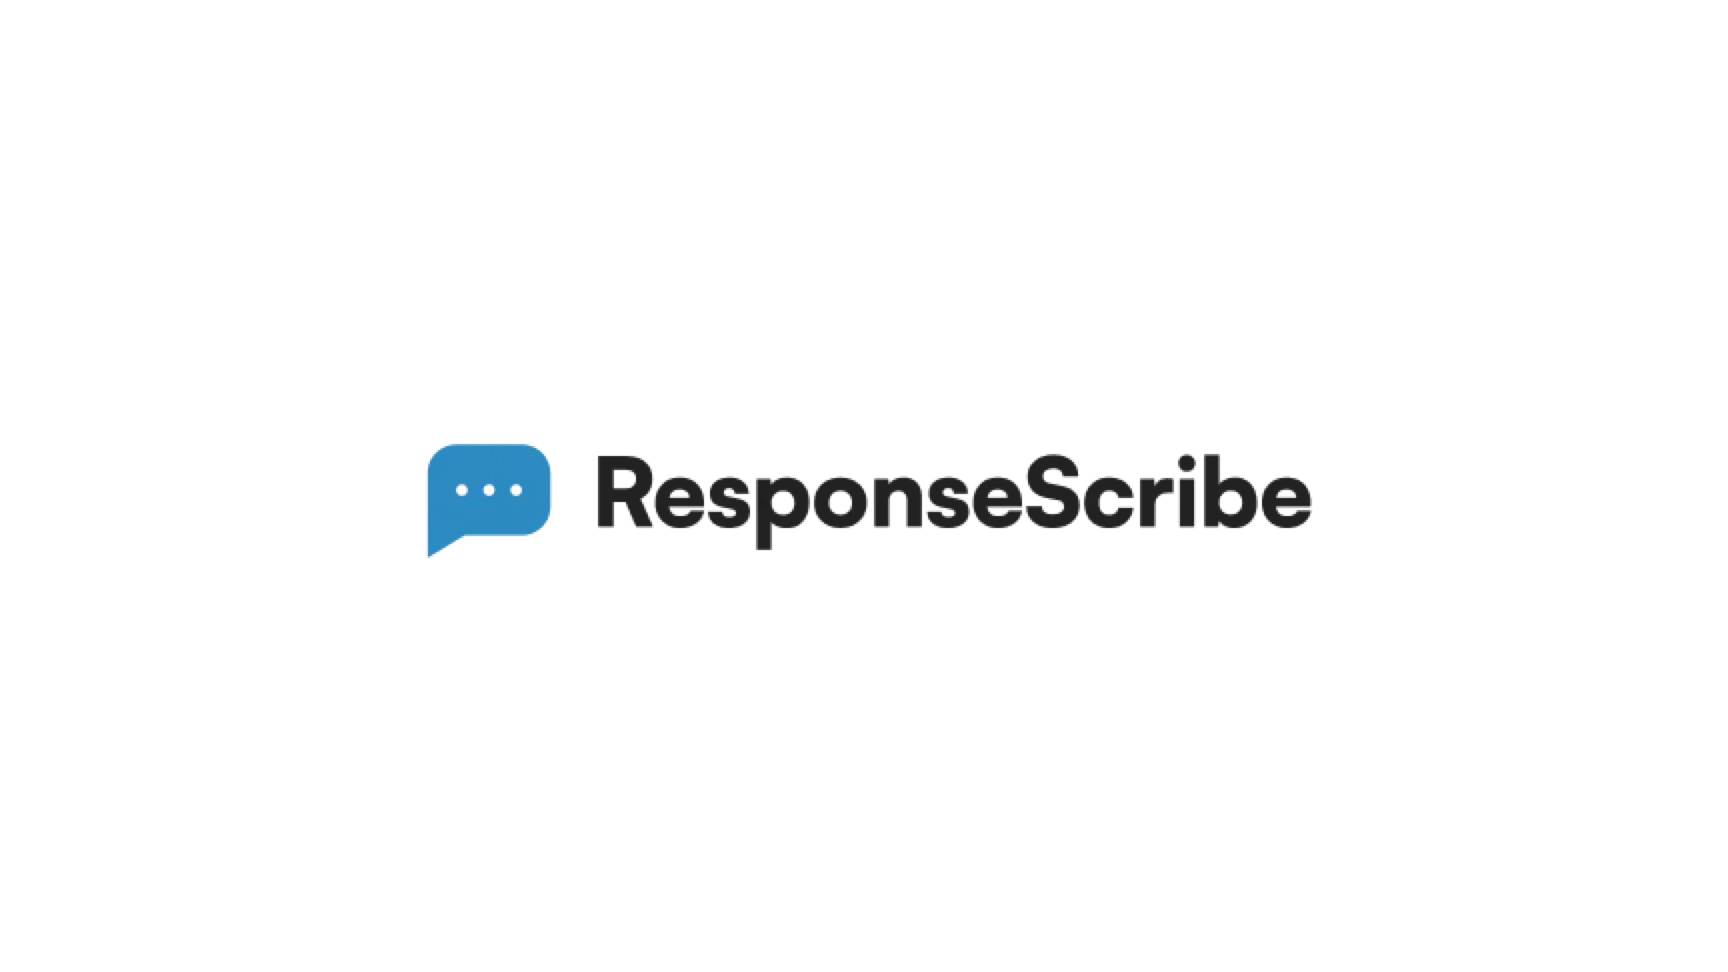 ResponseScribe